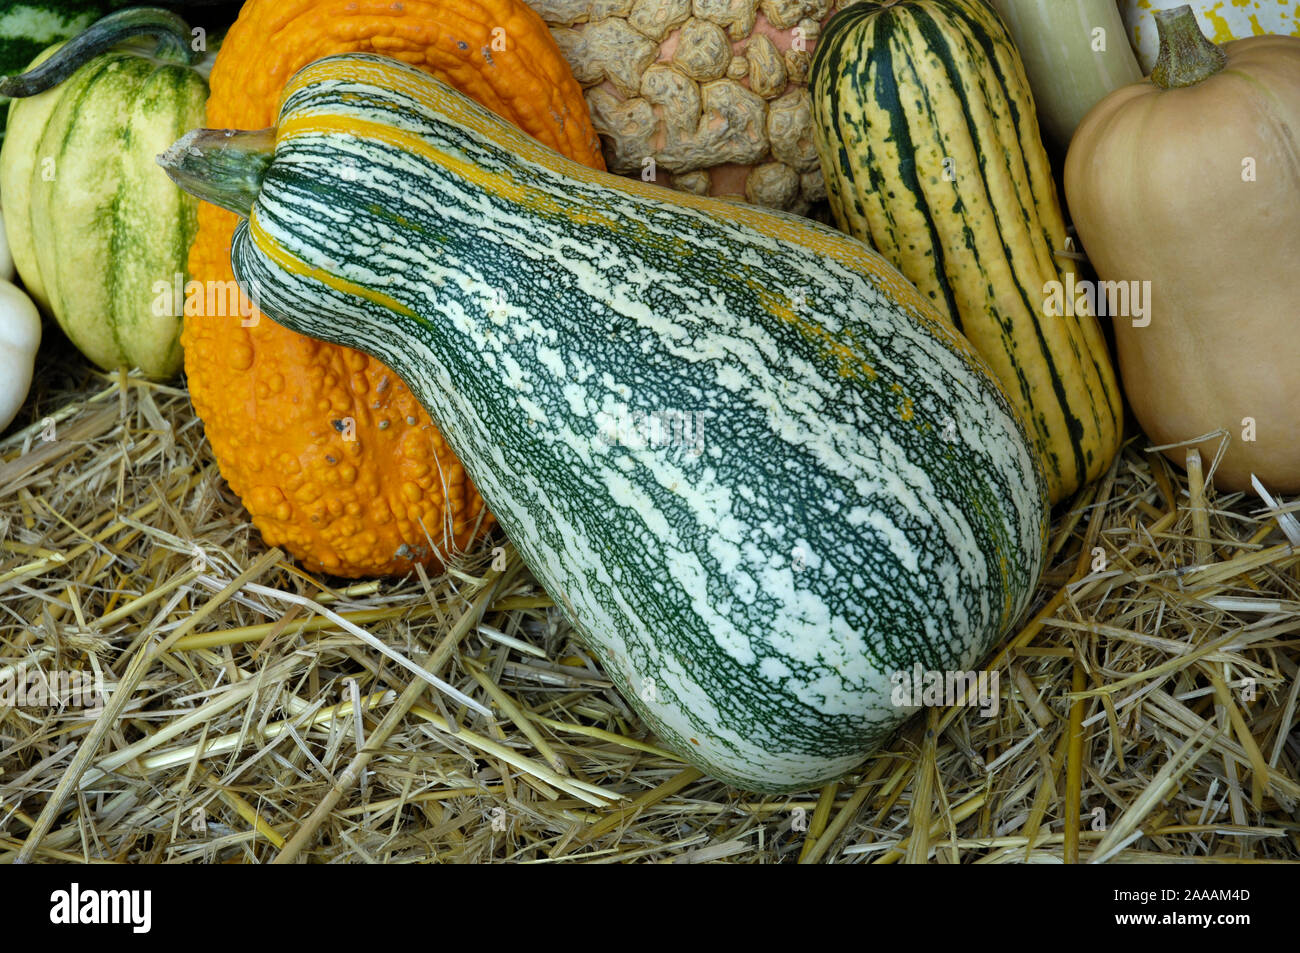 Pumpkins 'Cushaw green striped' / (Cucurbita pepo) / Speisekuerbisse 'Cushaw green striped', Zierkuerbisse / Zierkürbis, Gartenkürbis, Kuerbisgewaechs Stock Photo